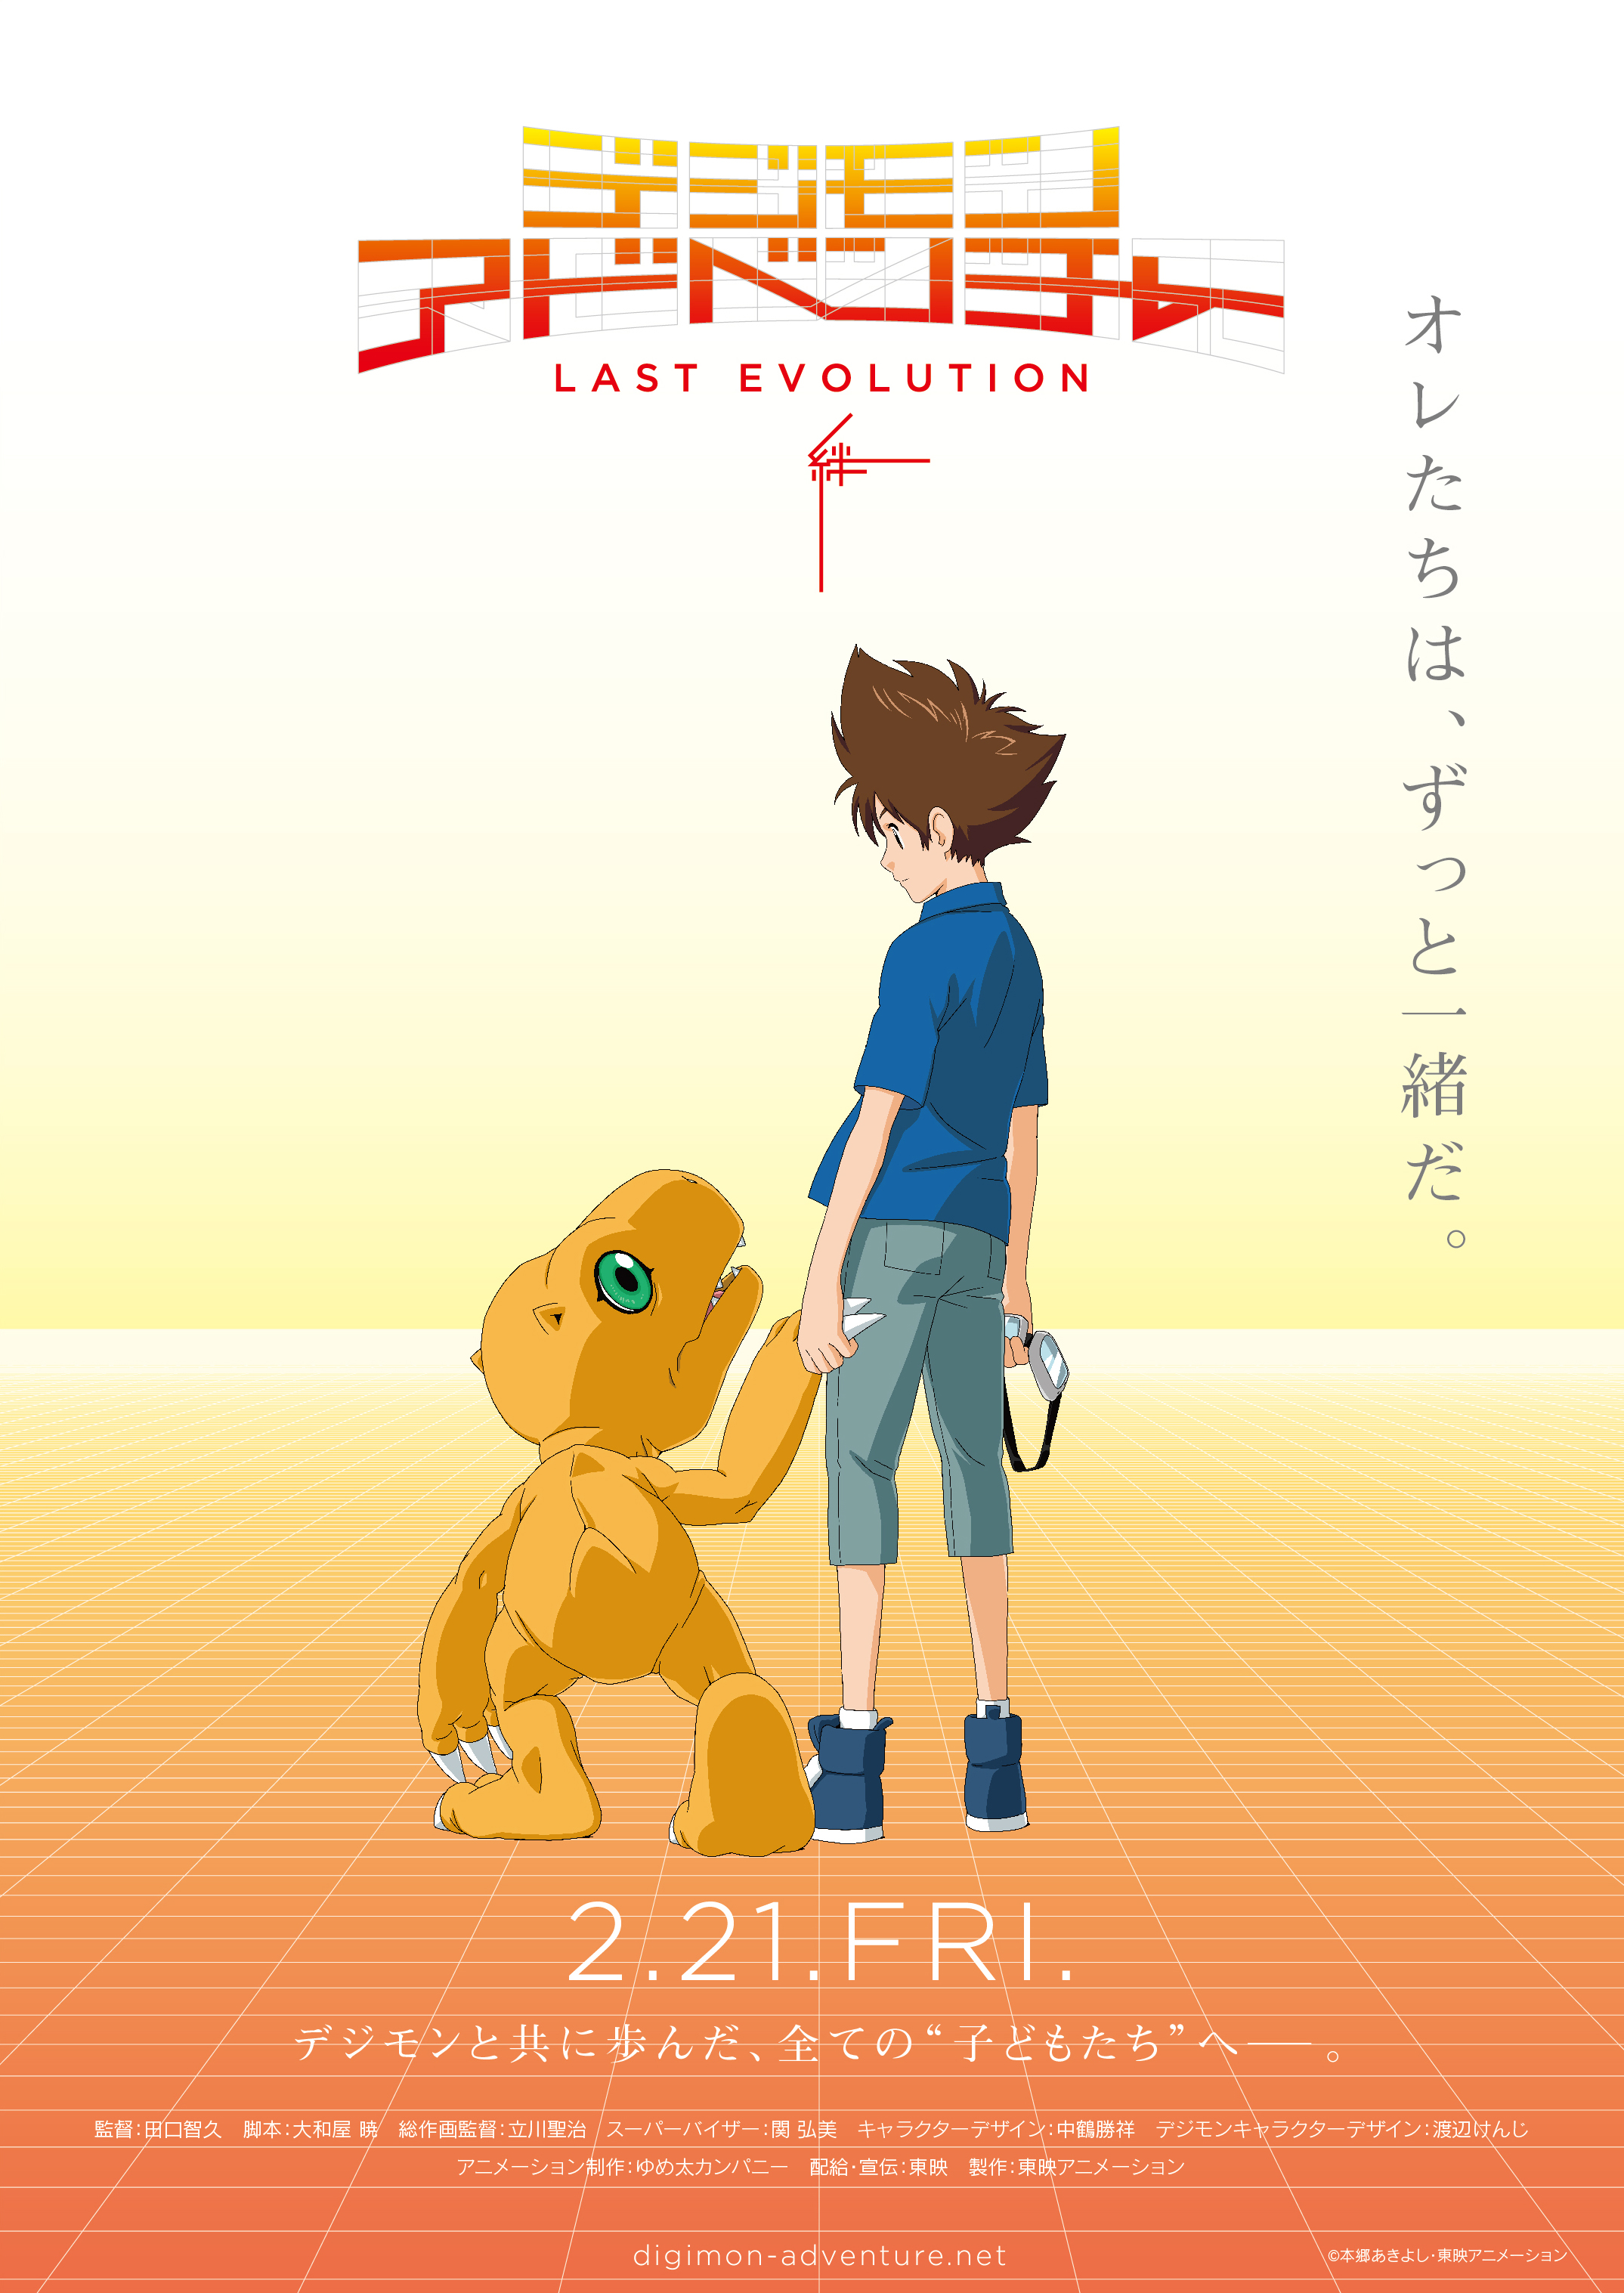 Digimon Adventure 02, novo filme da franquia, é anunciado